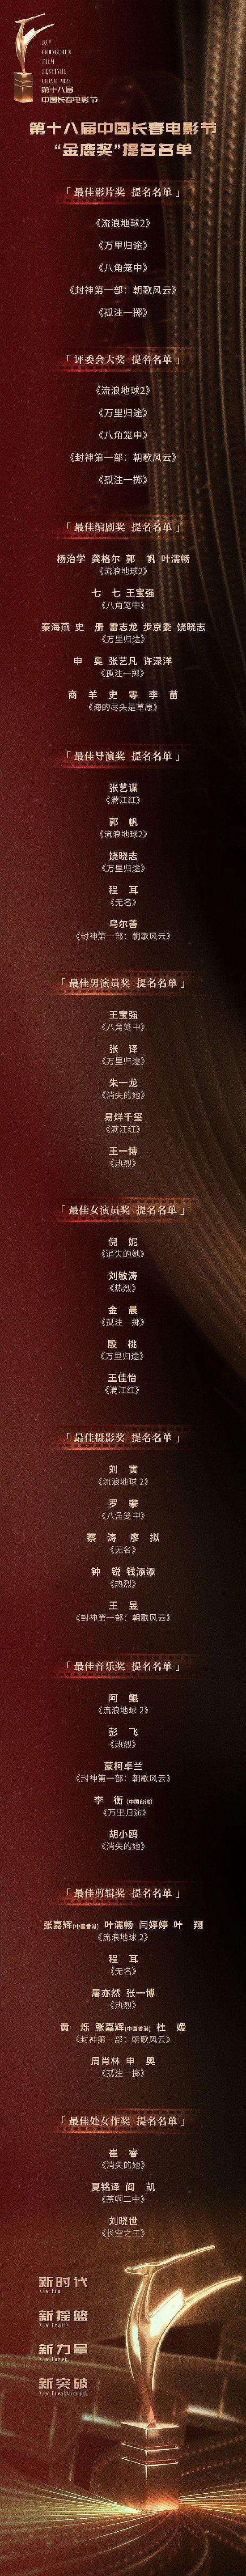 第十八届中国长春电影节“金鹿奖”提名名单公布 - 1